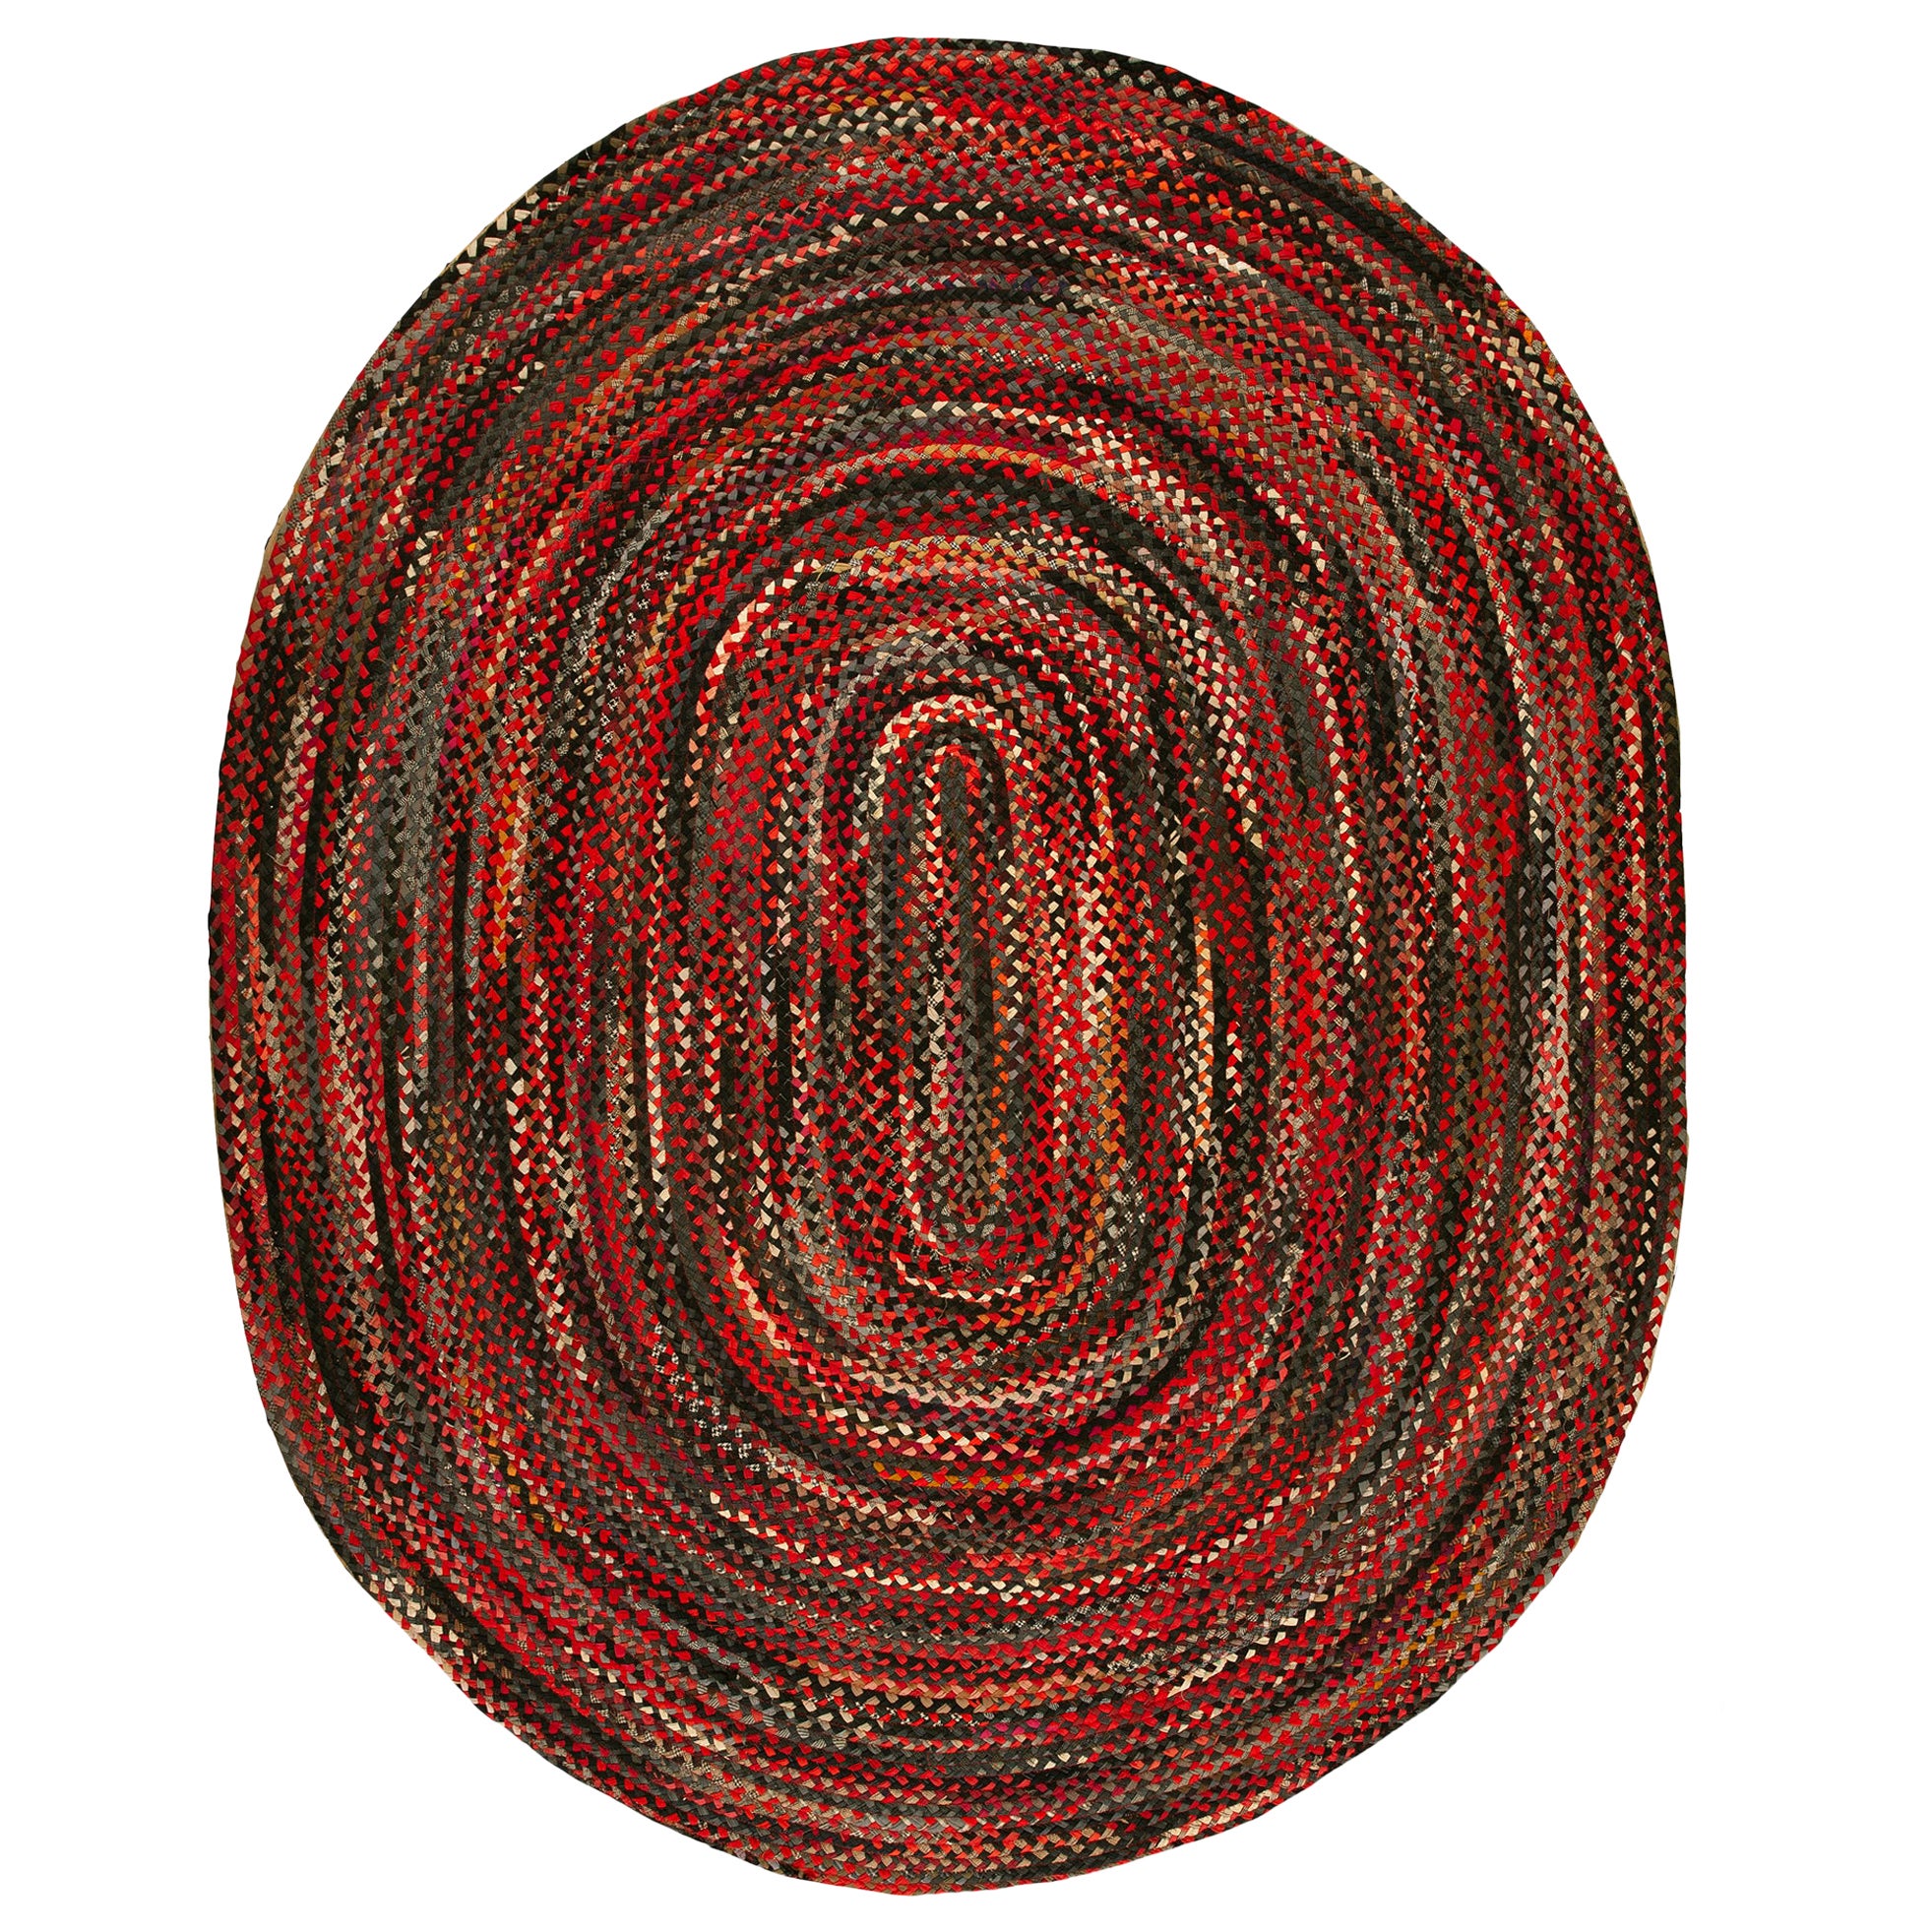 Amerikanischer geflochtener Teppich aus den 1930er Jahren ( 8' 9 Zoll x 11' - 267 x 335 cm)